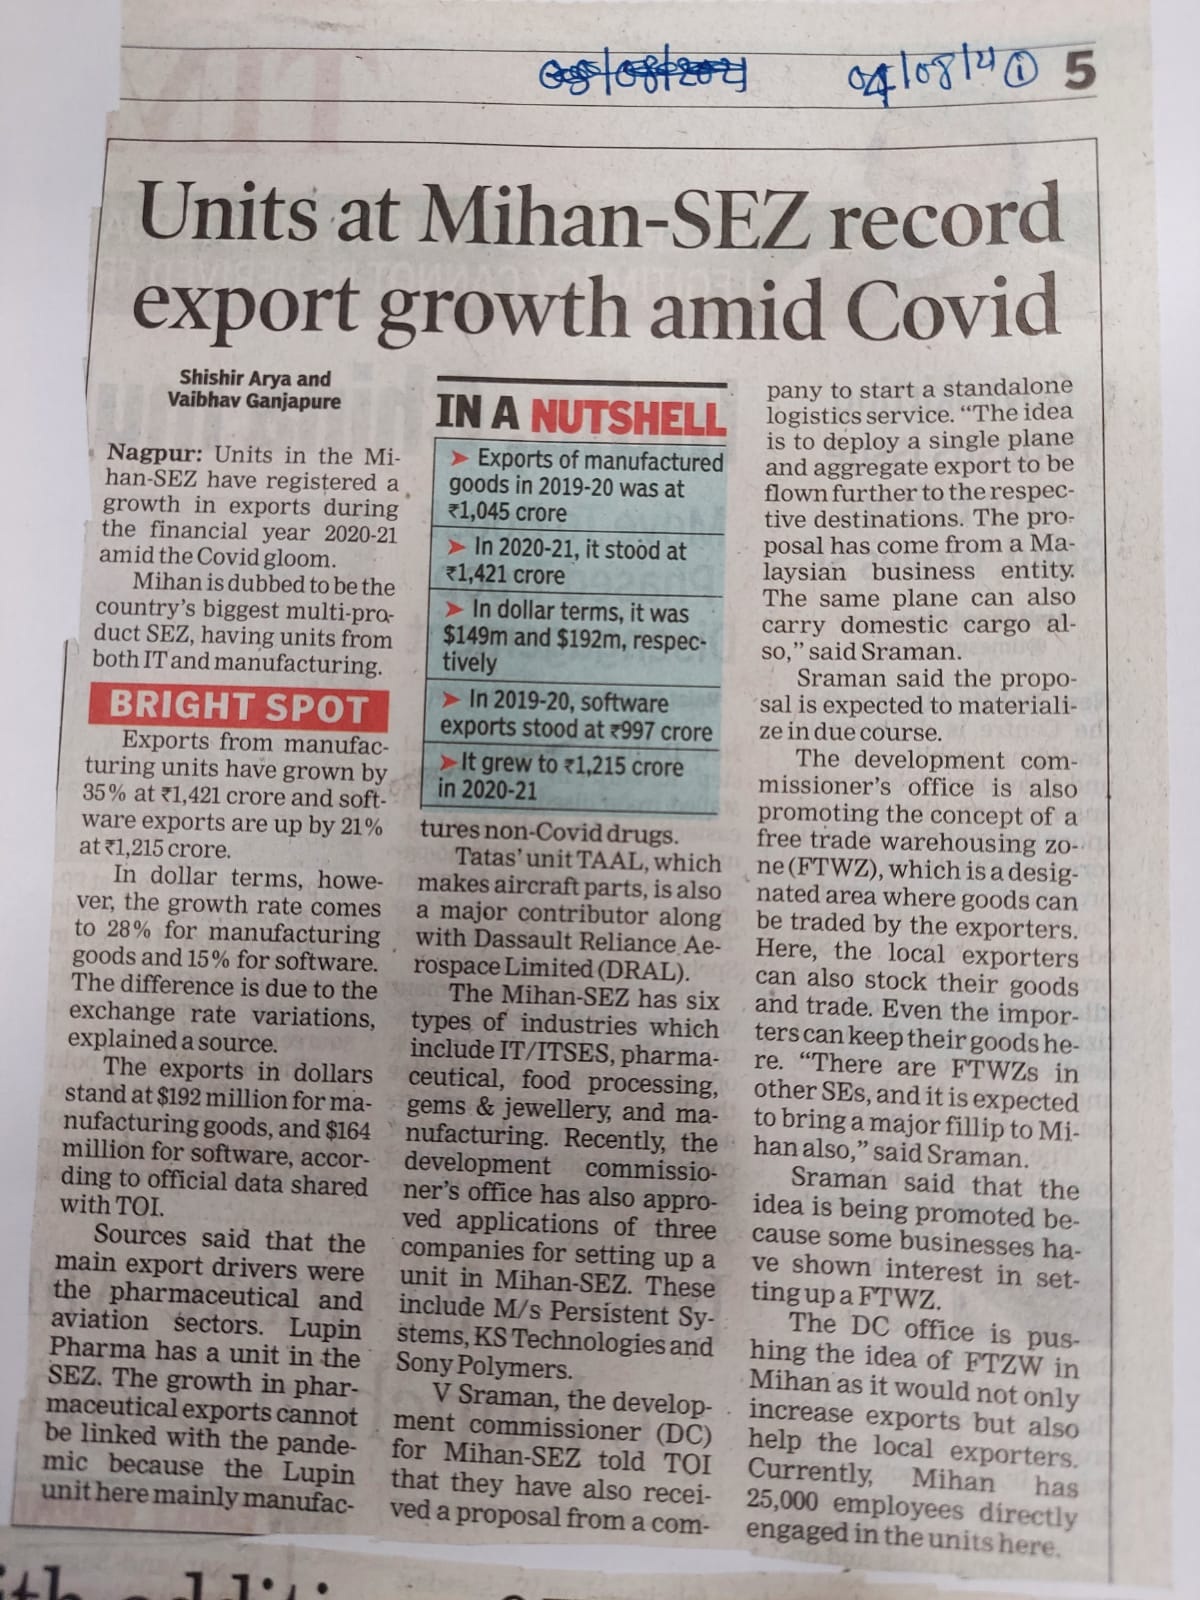 Units at MIHAN-SEZ record export growth amid Covid